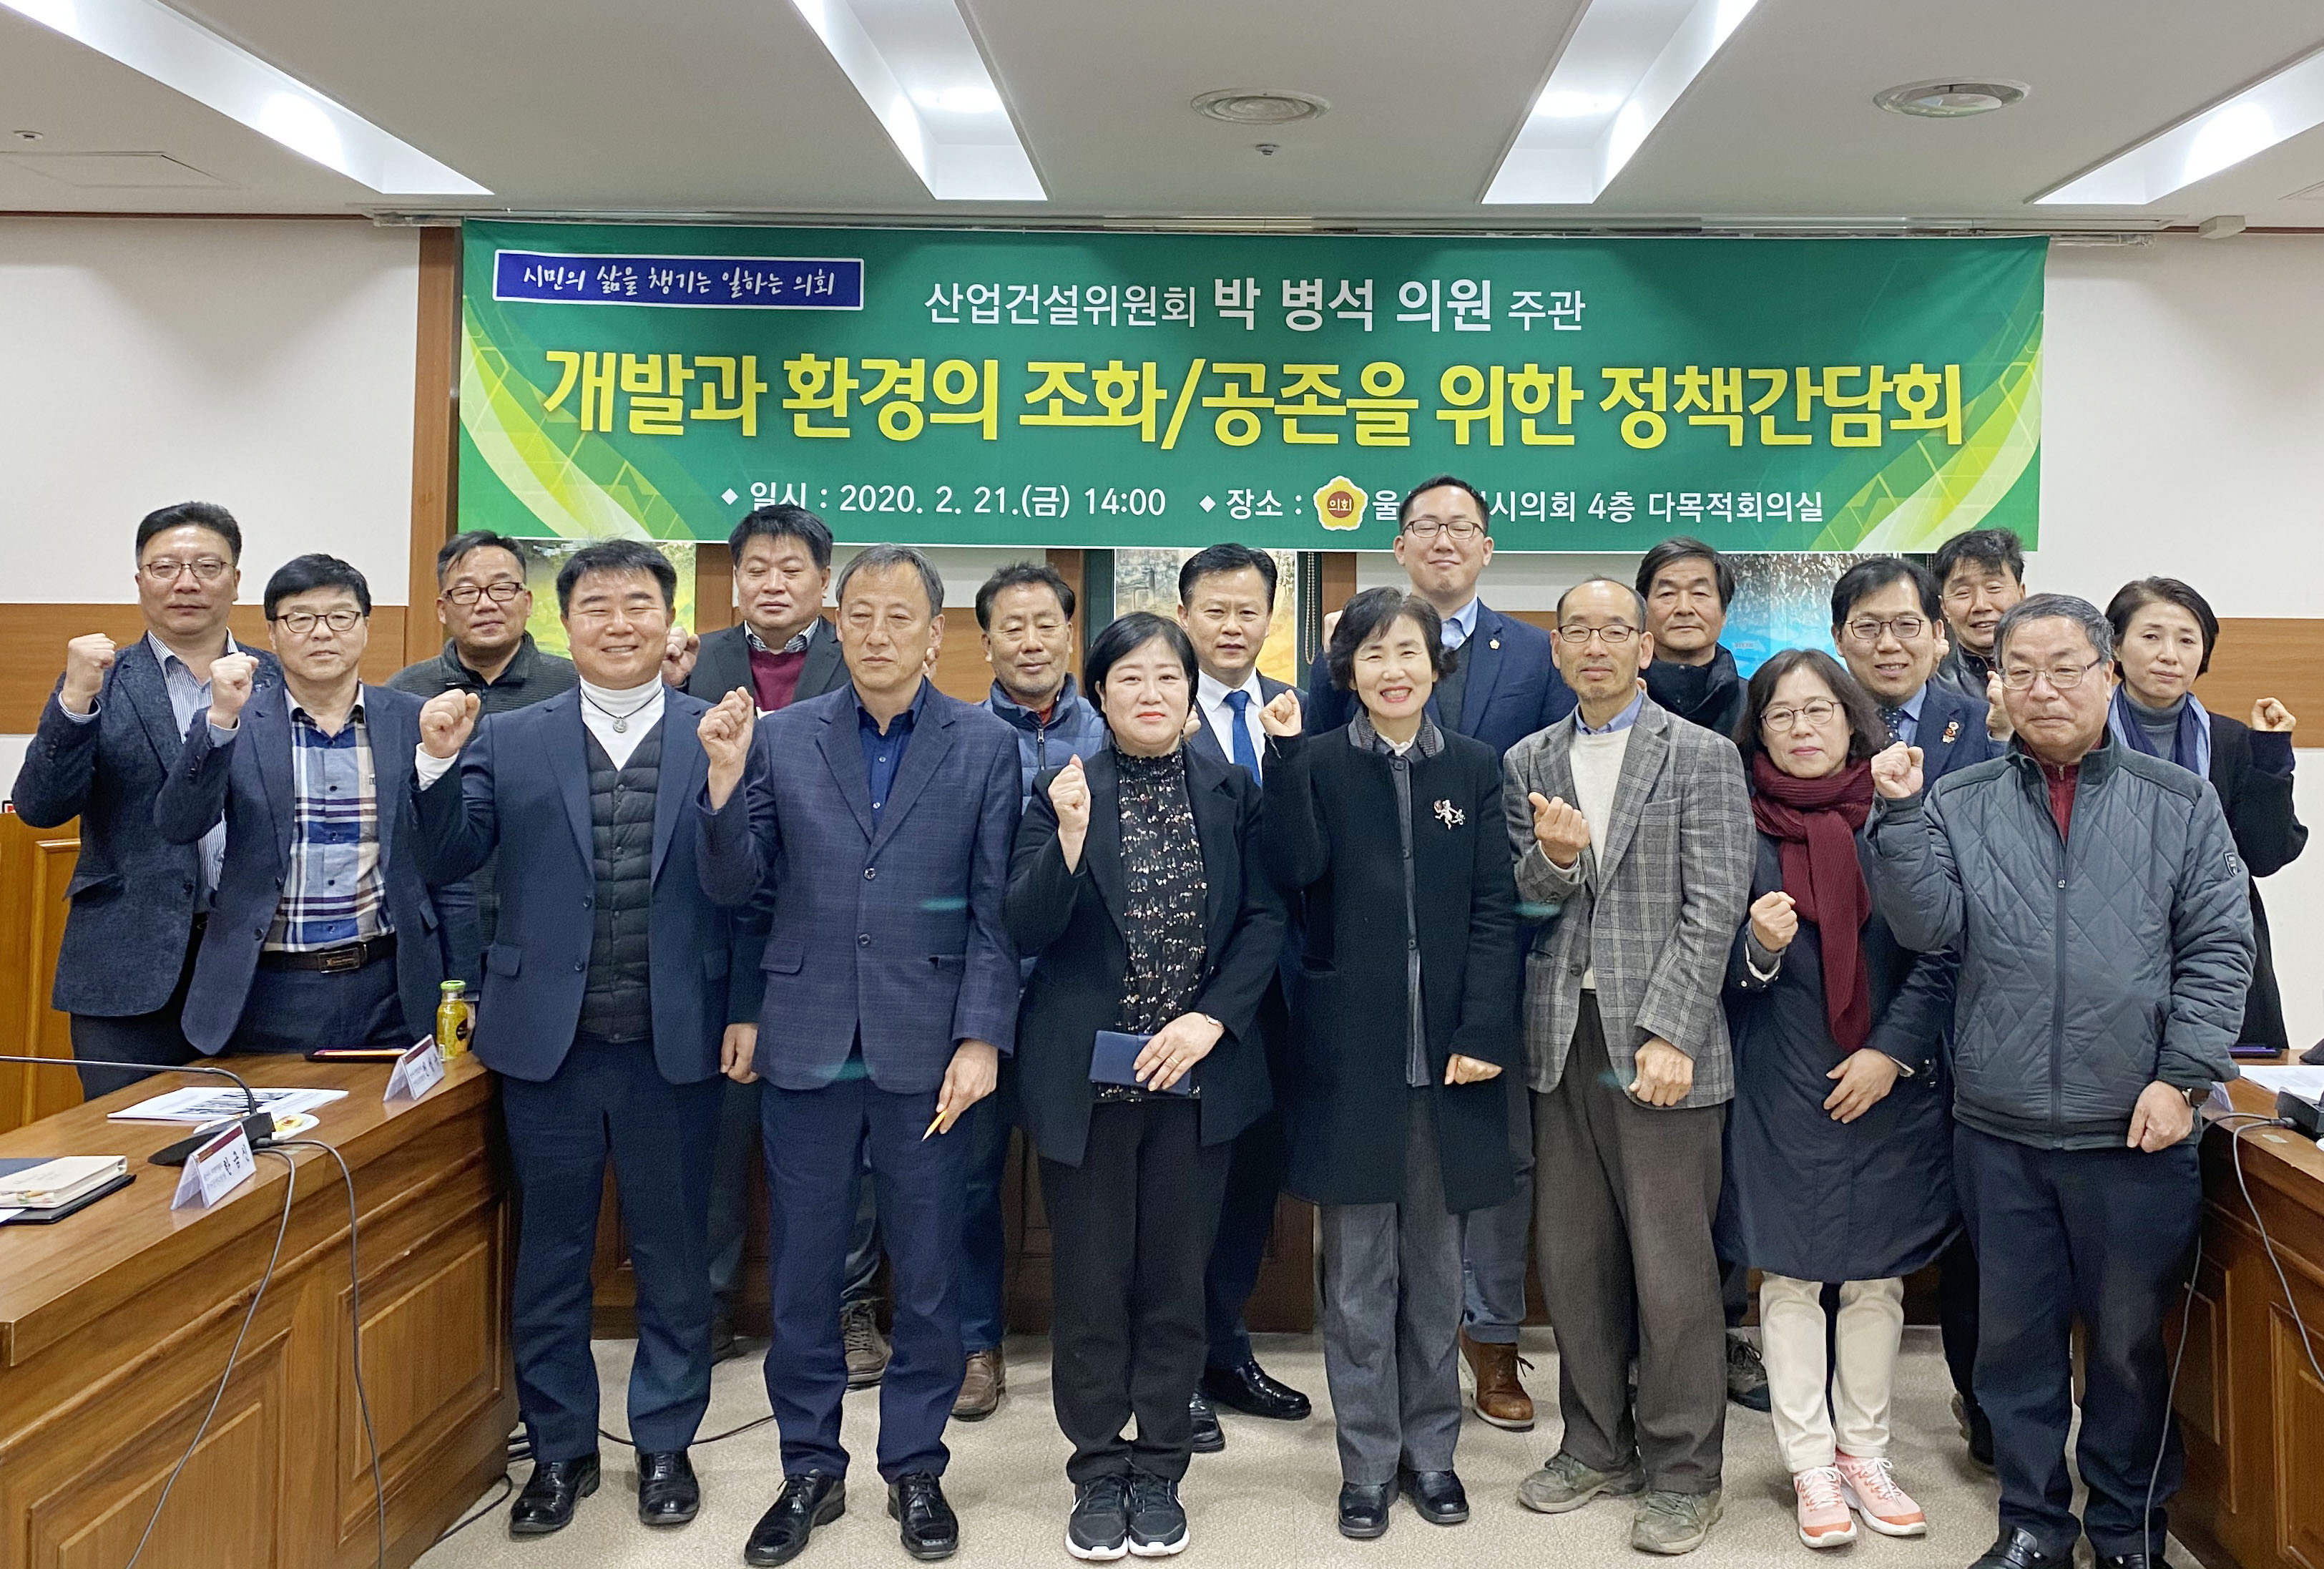 박병석 의원 개발과 환경의 조화/공존을 위한 정책간담회 개최8